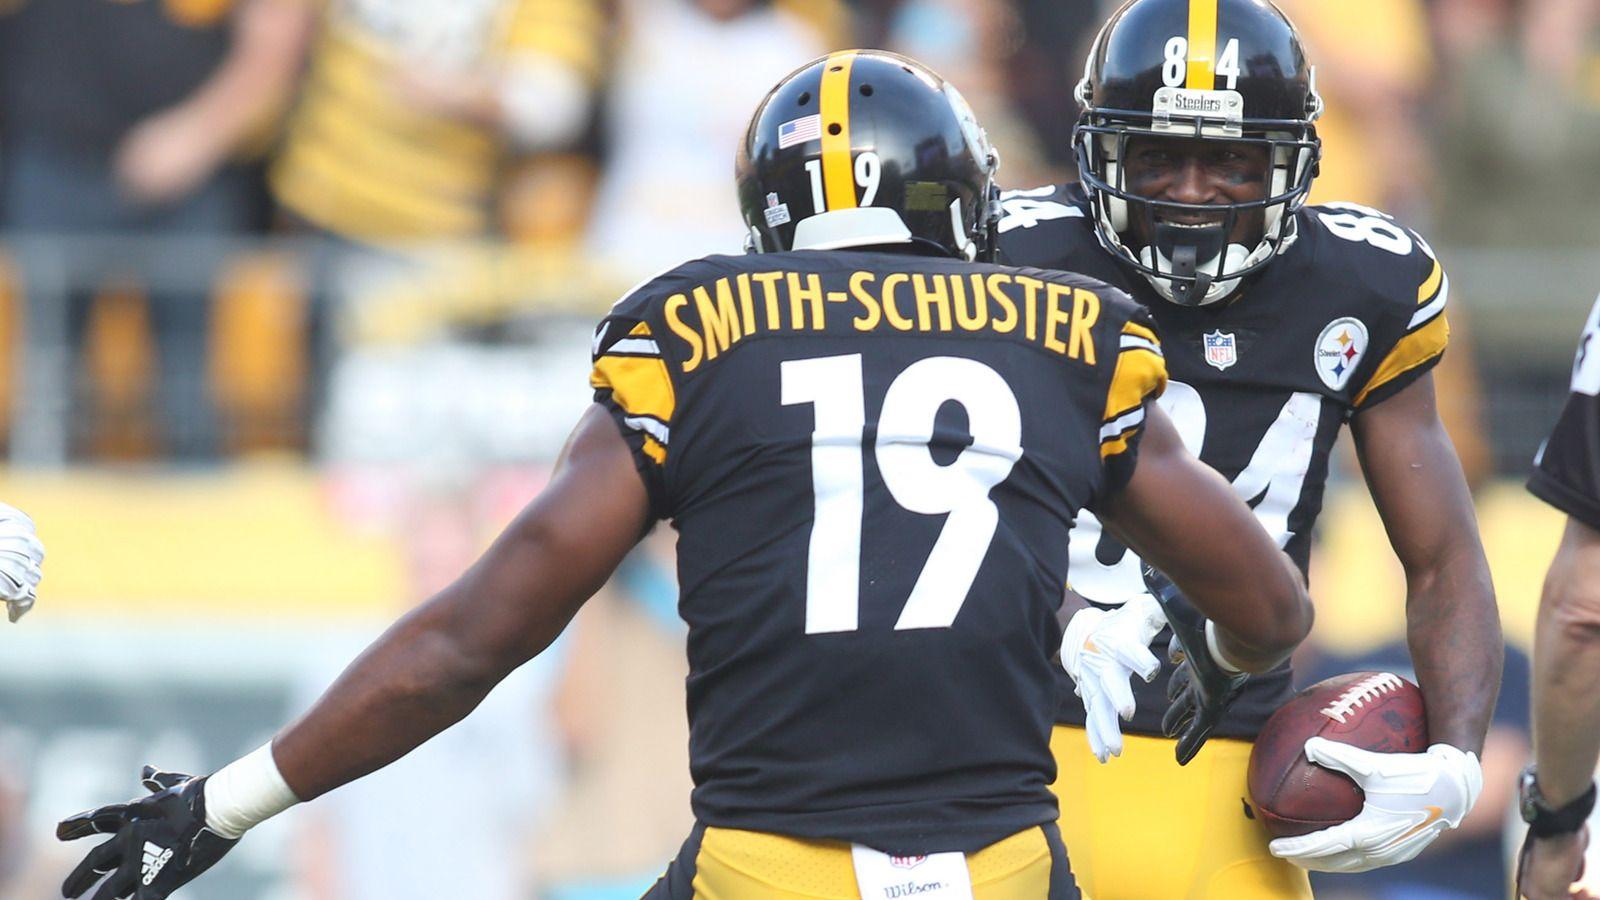 WATCH: Steelers produce best TD celebration of season